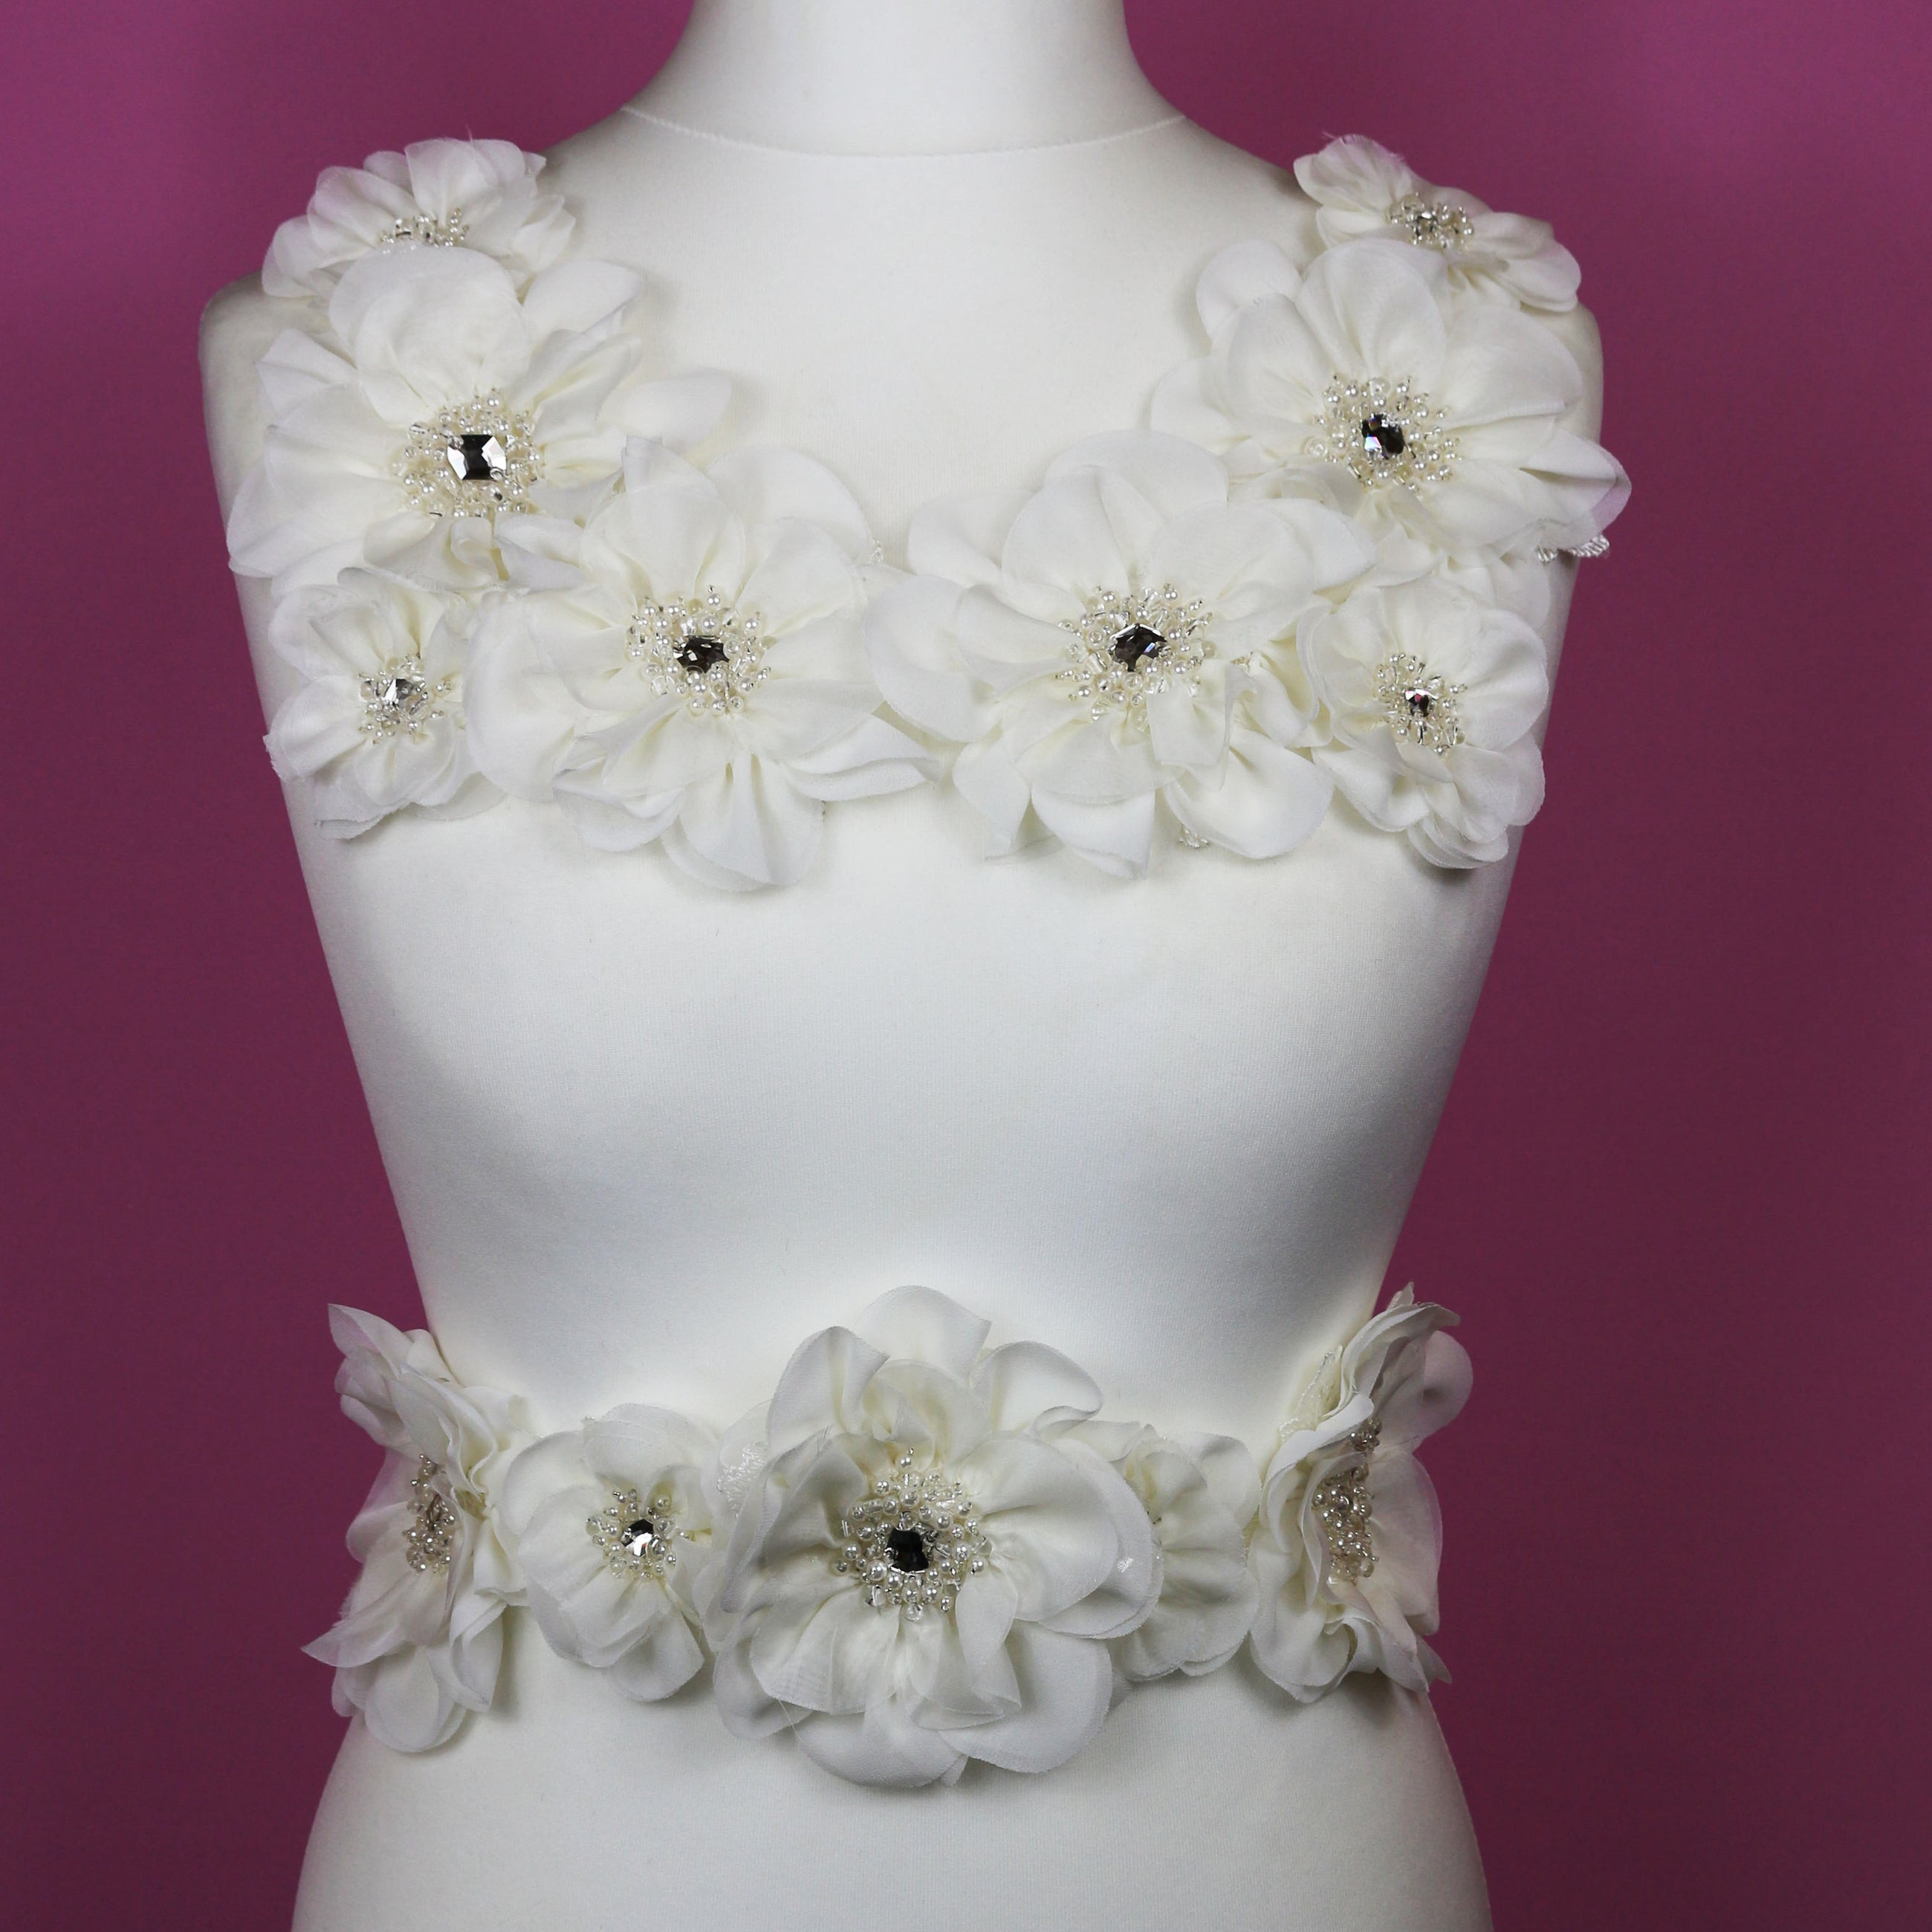 3D Lace Appliques : Wedding Dresses - Bridal Fabrics